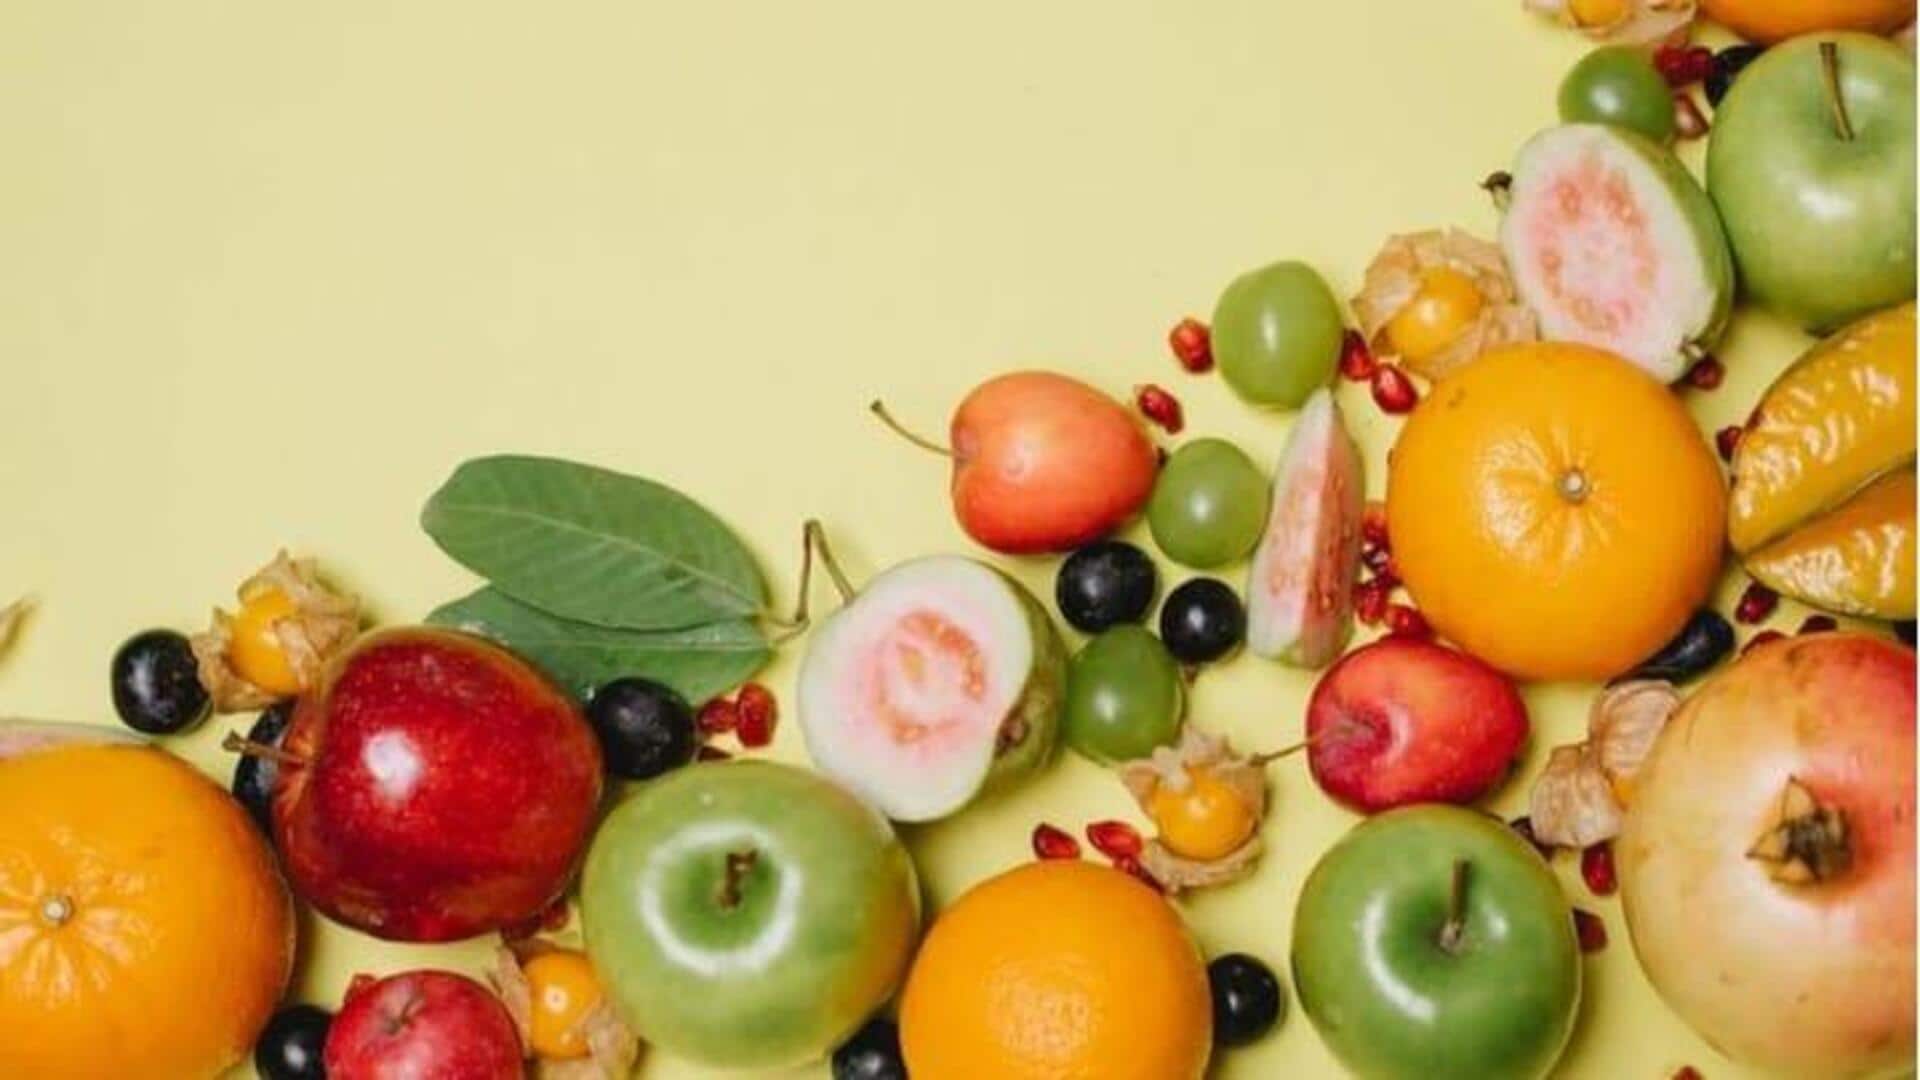 Makanlah buah-buahan ini dengan kulitnya untuk mendapatkan lebih banyak manfaat kesehatan